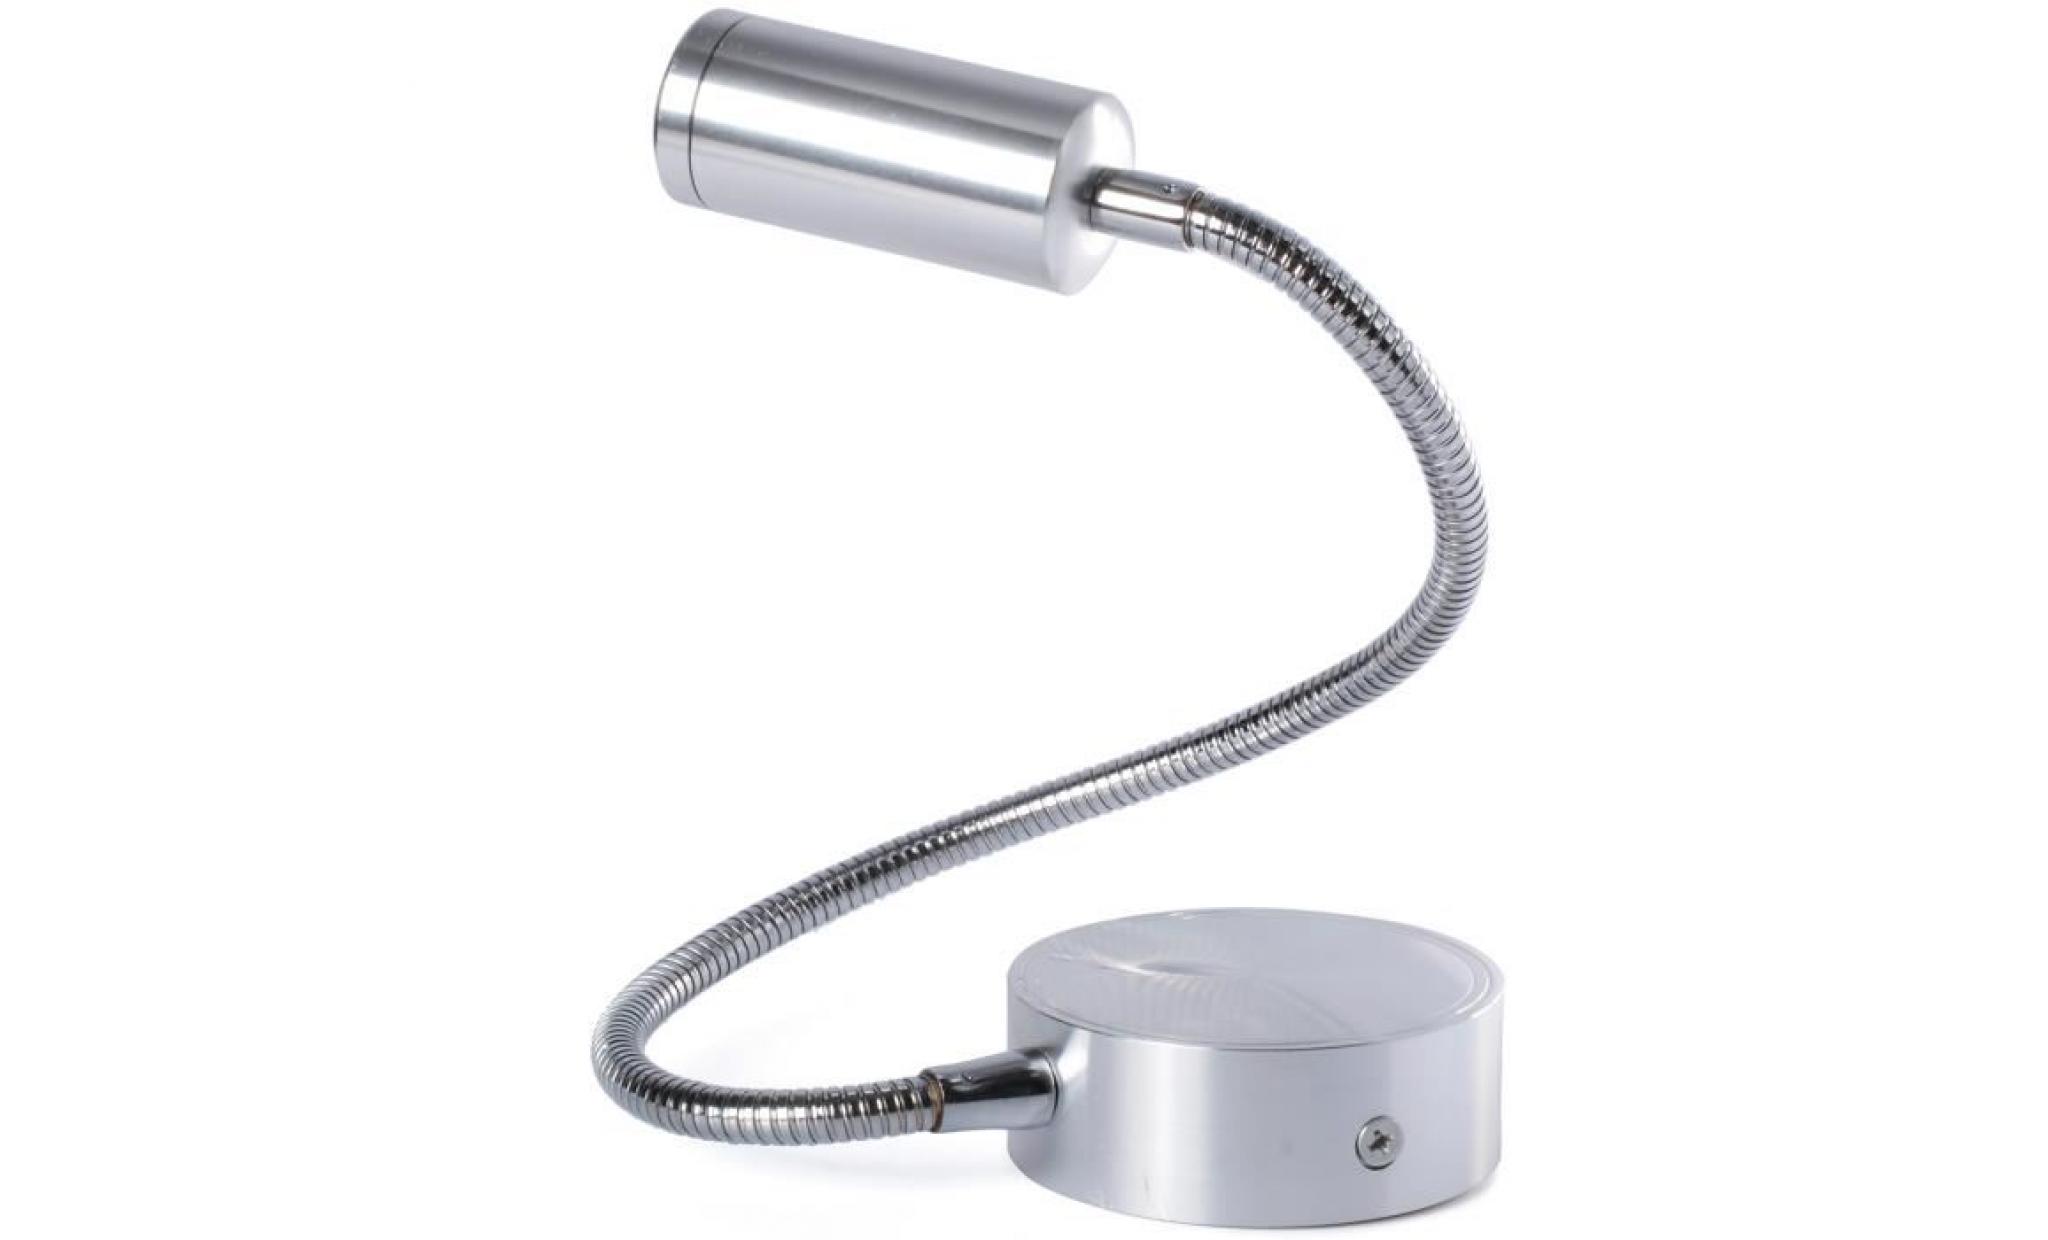 xcsource applique moderne de lumière blanc chaud lampe led ac85 265v 3w mur orientable avec bras flexible eclairage de lecture pas cher